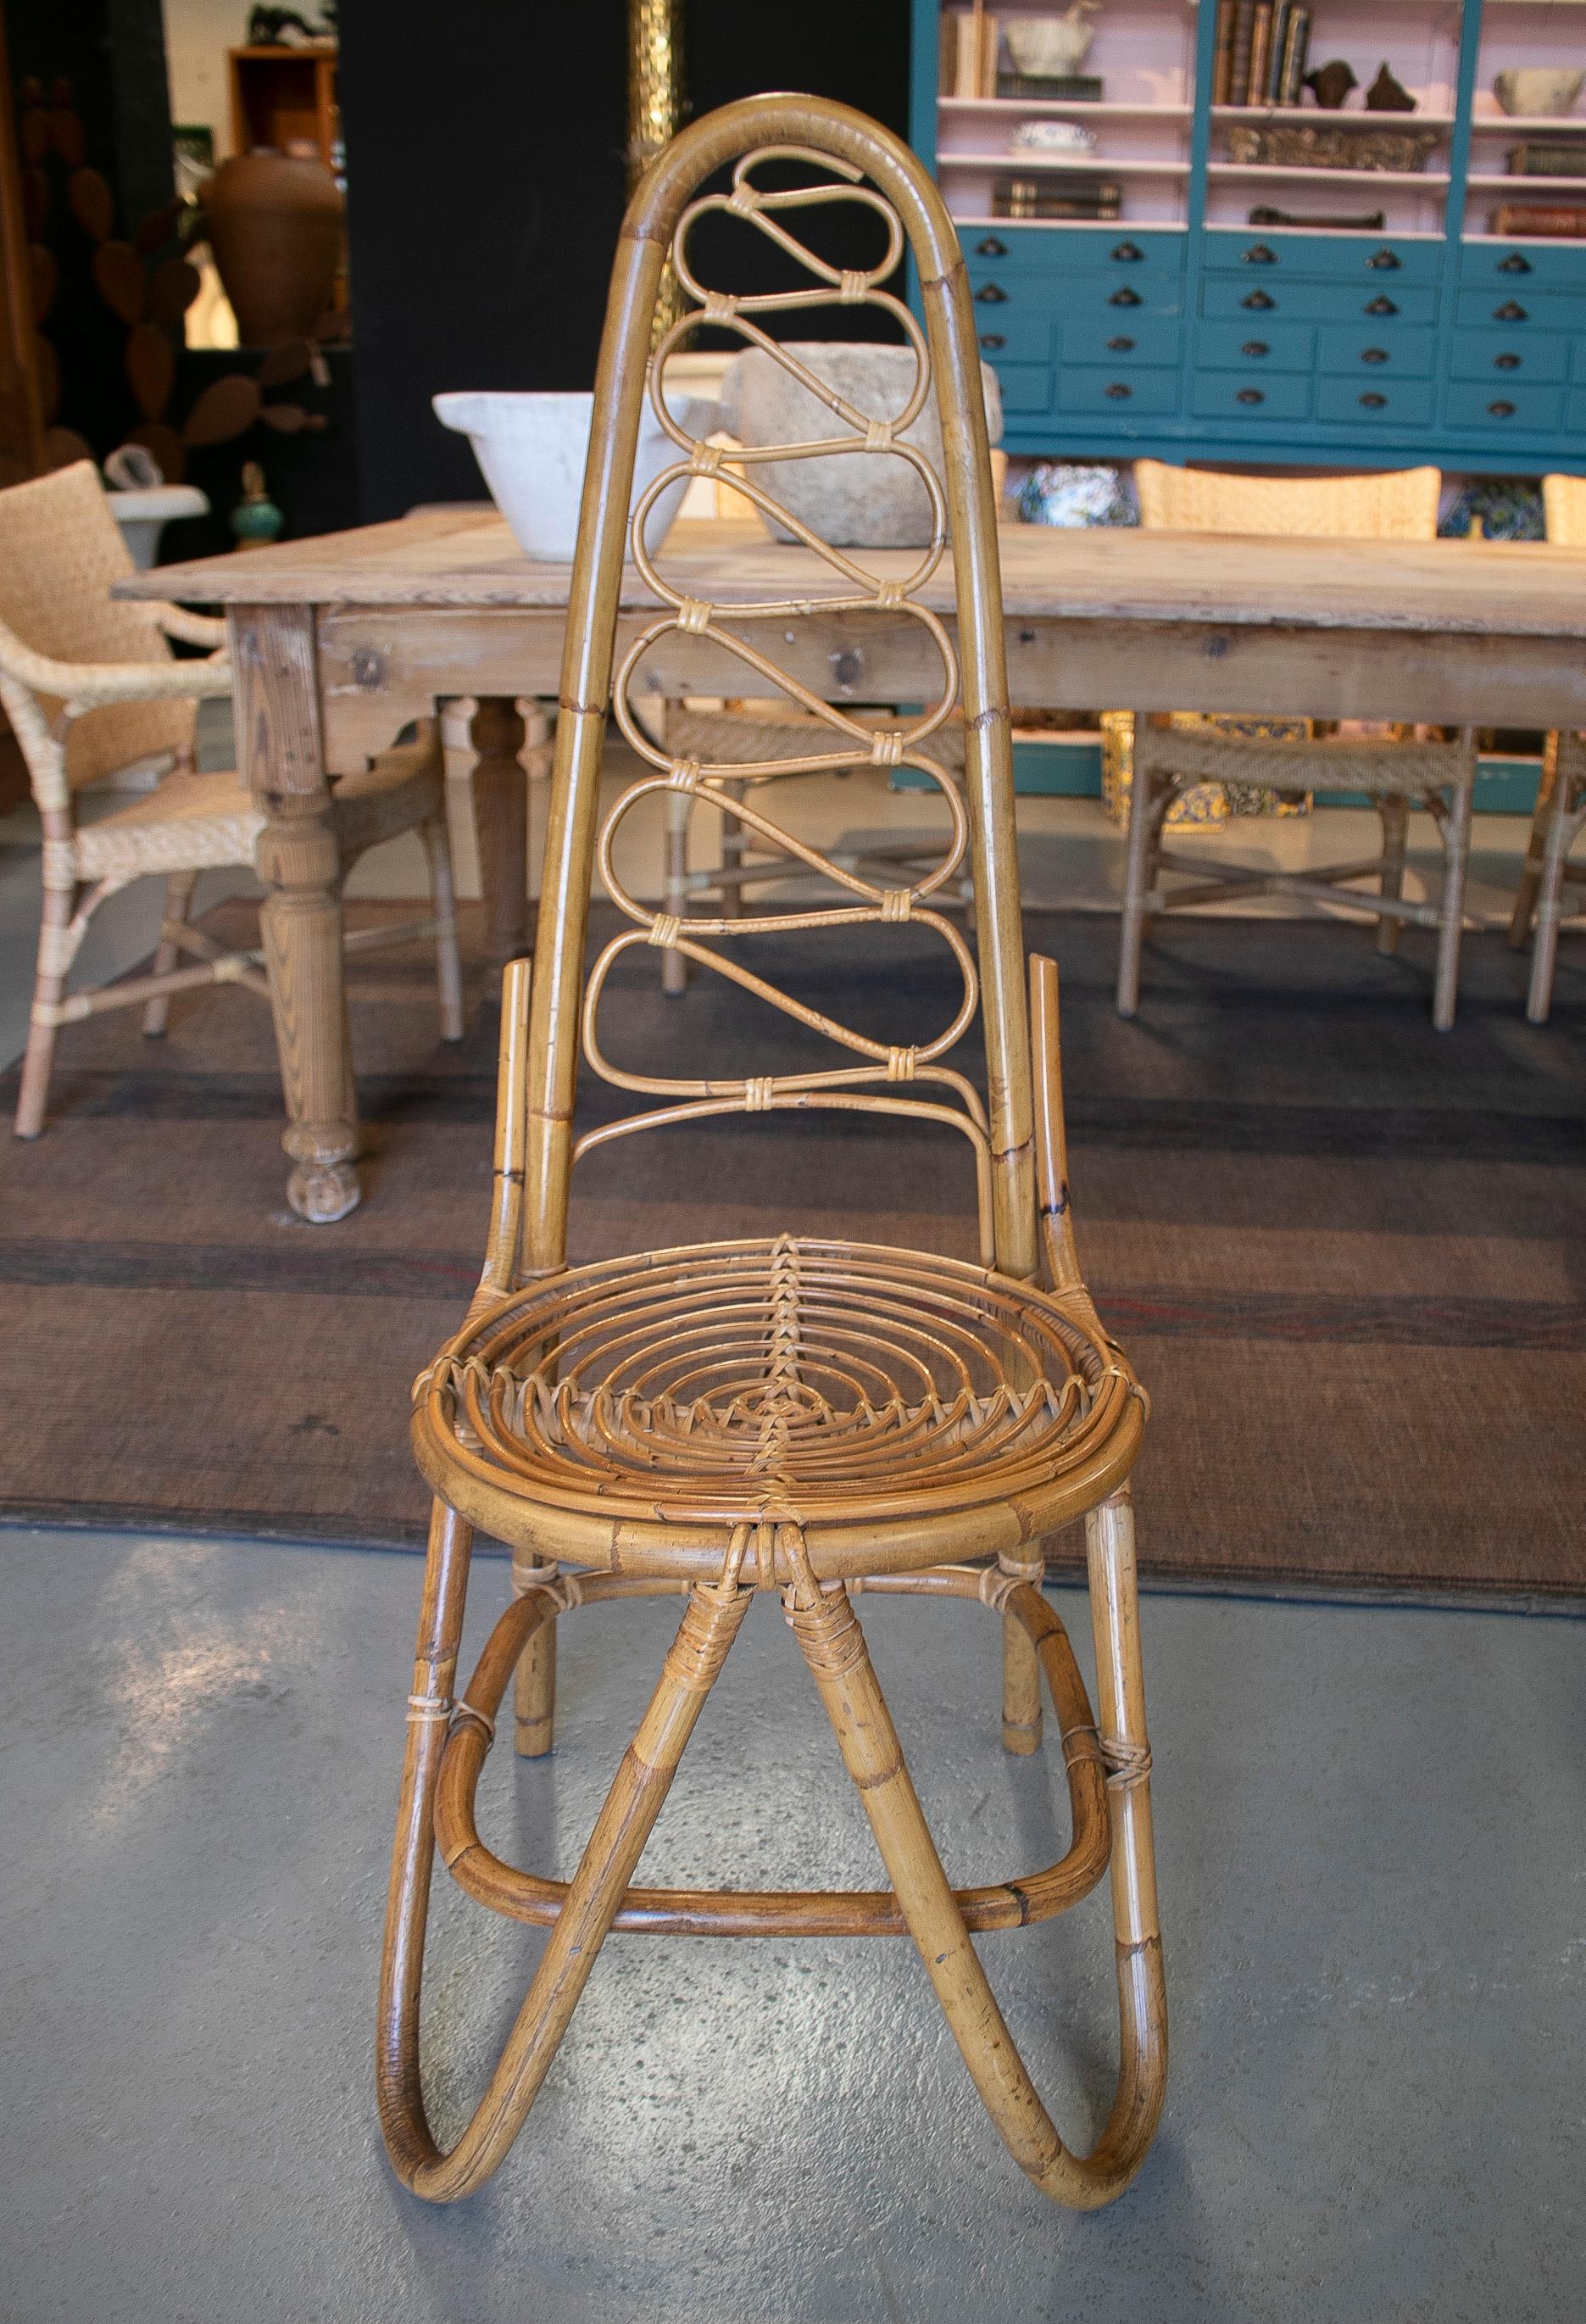 1970s high chair